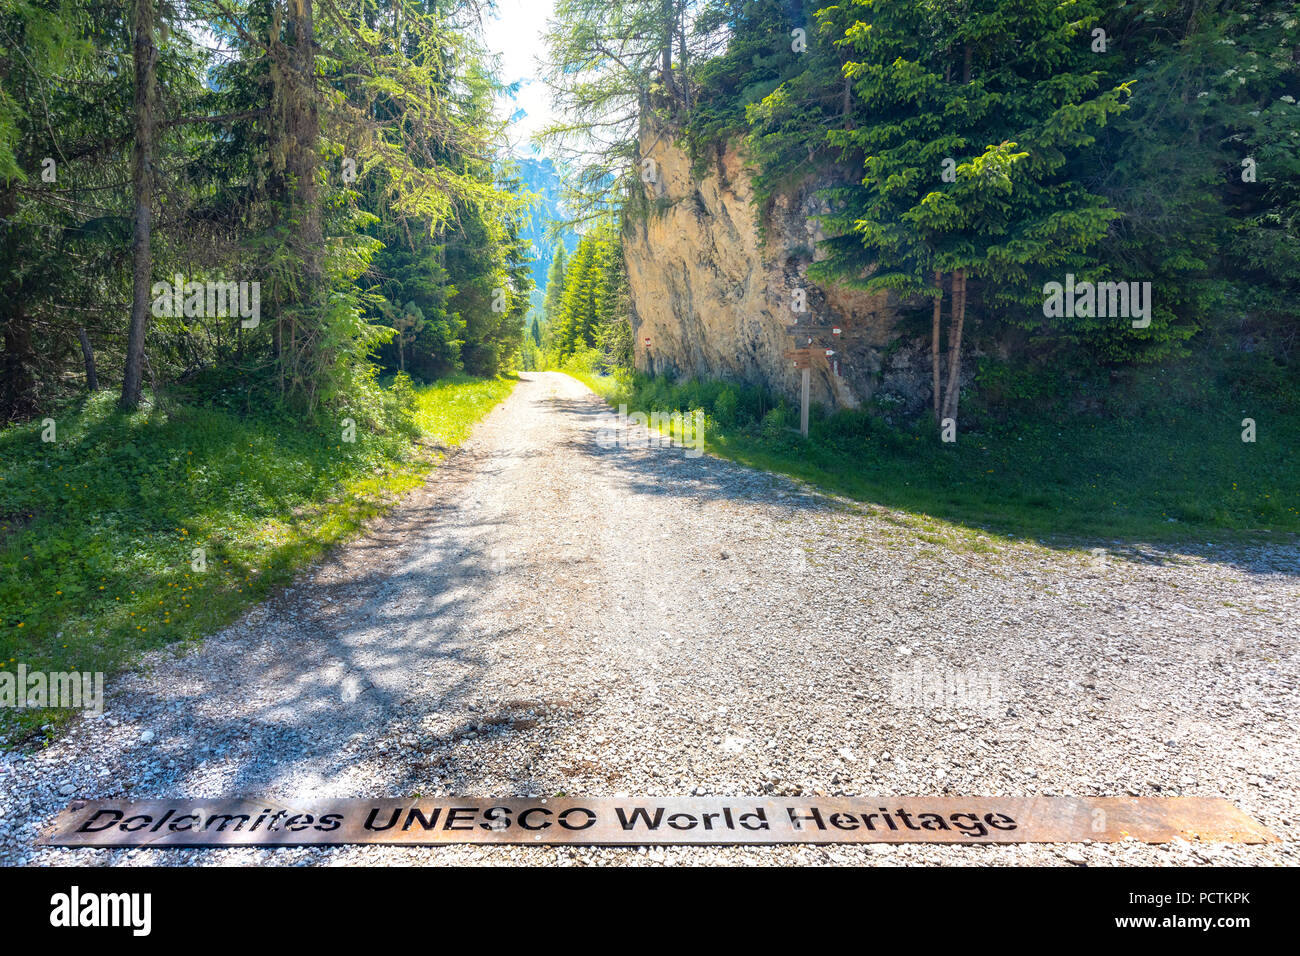 Dolomiten Unesco Welterbe, auf Eisen auf einem der Eingänge des Naturpark Puez-Geisler, Dolomiten, Bozen, Südtirol, Italien geschrieben Stockfoto